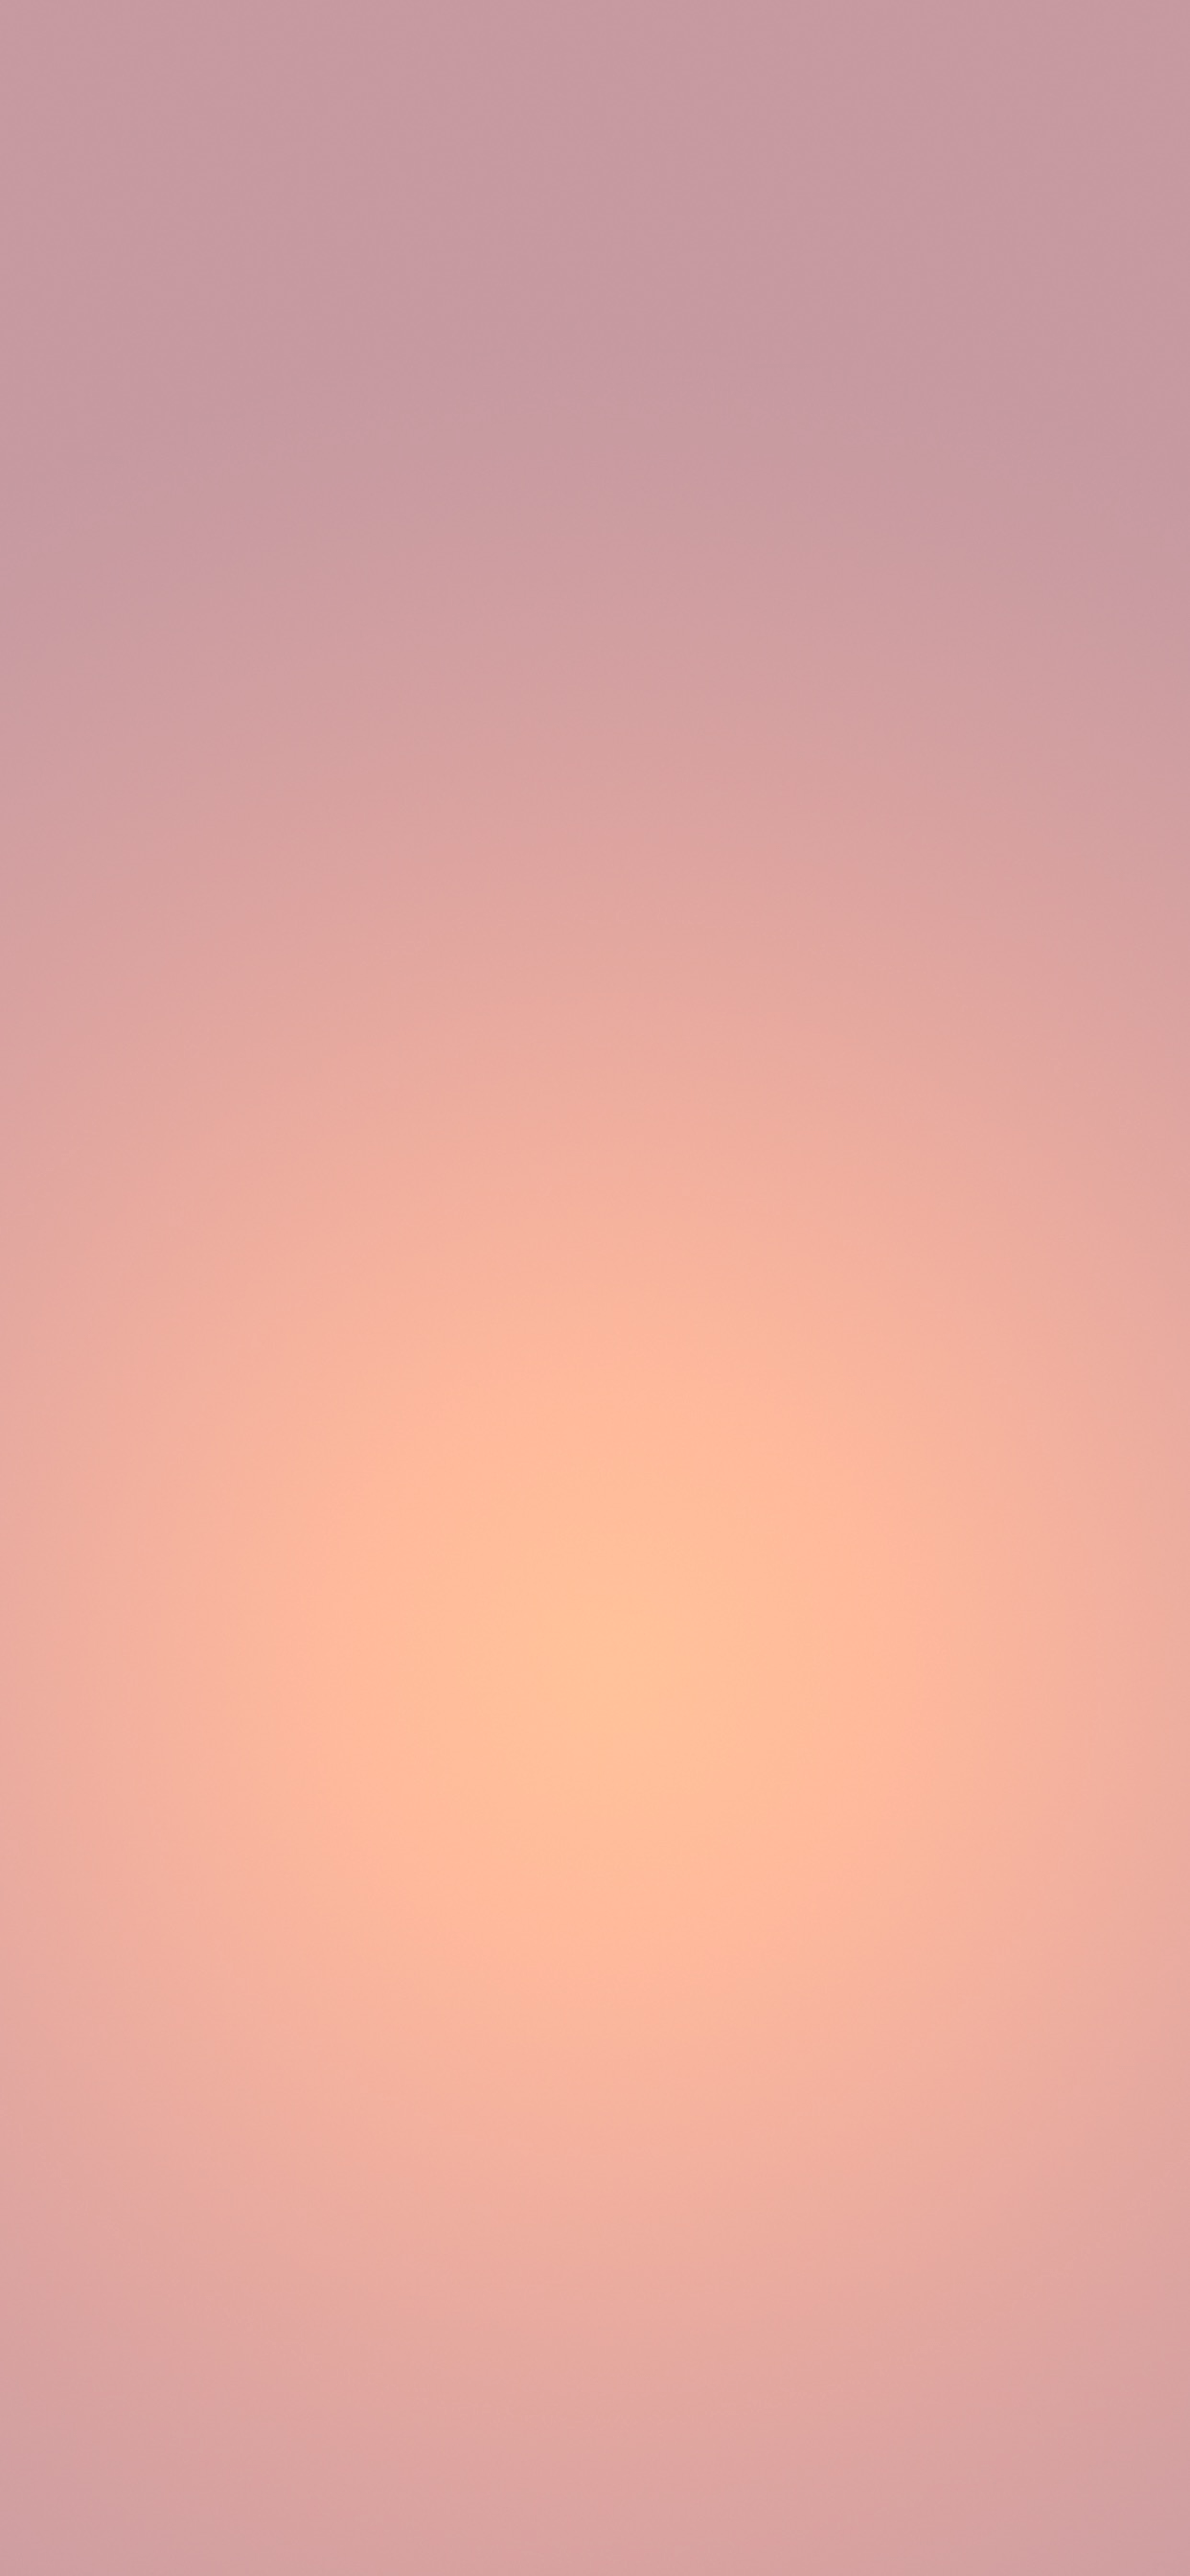 1242x2688 Hình nền gradient đơn giản cho iPhone